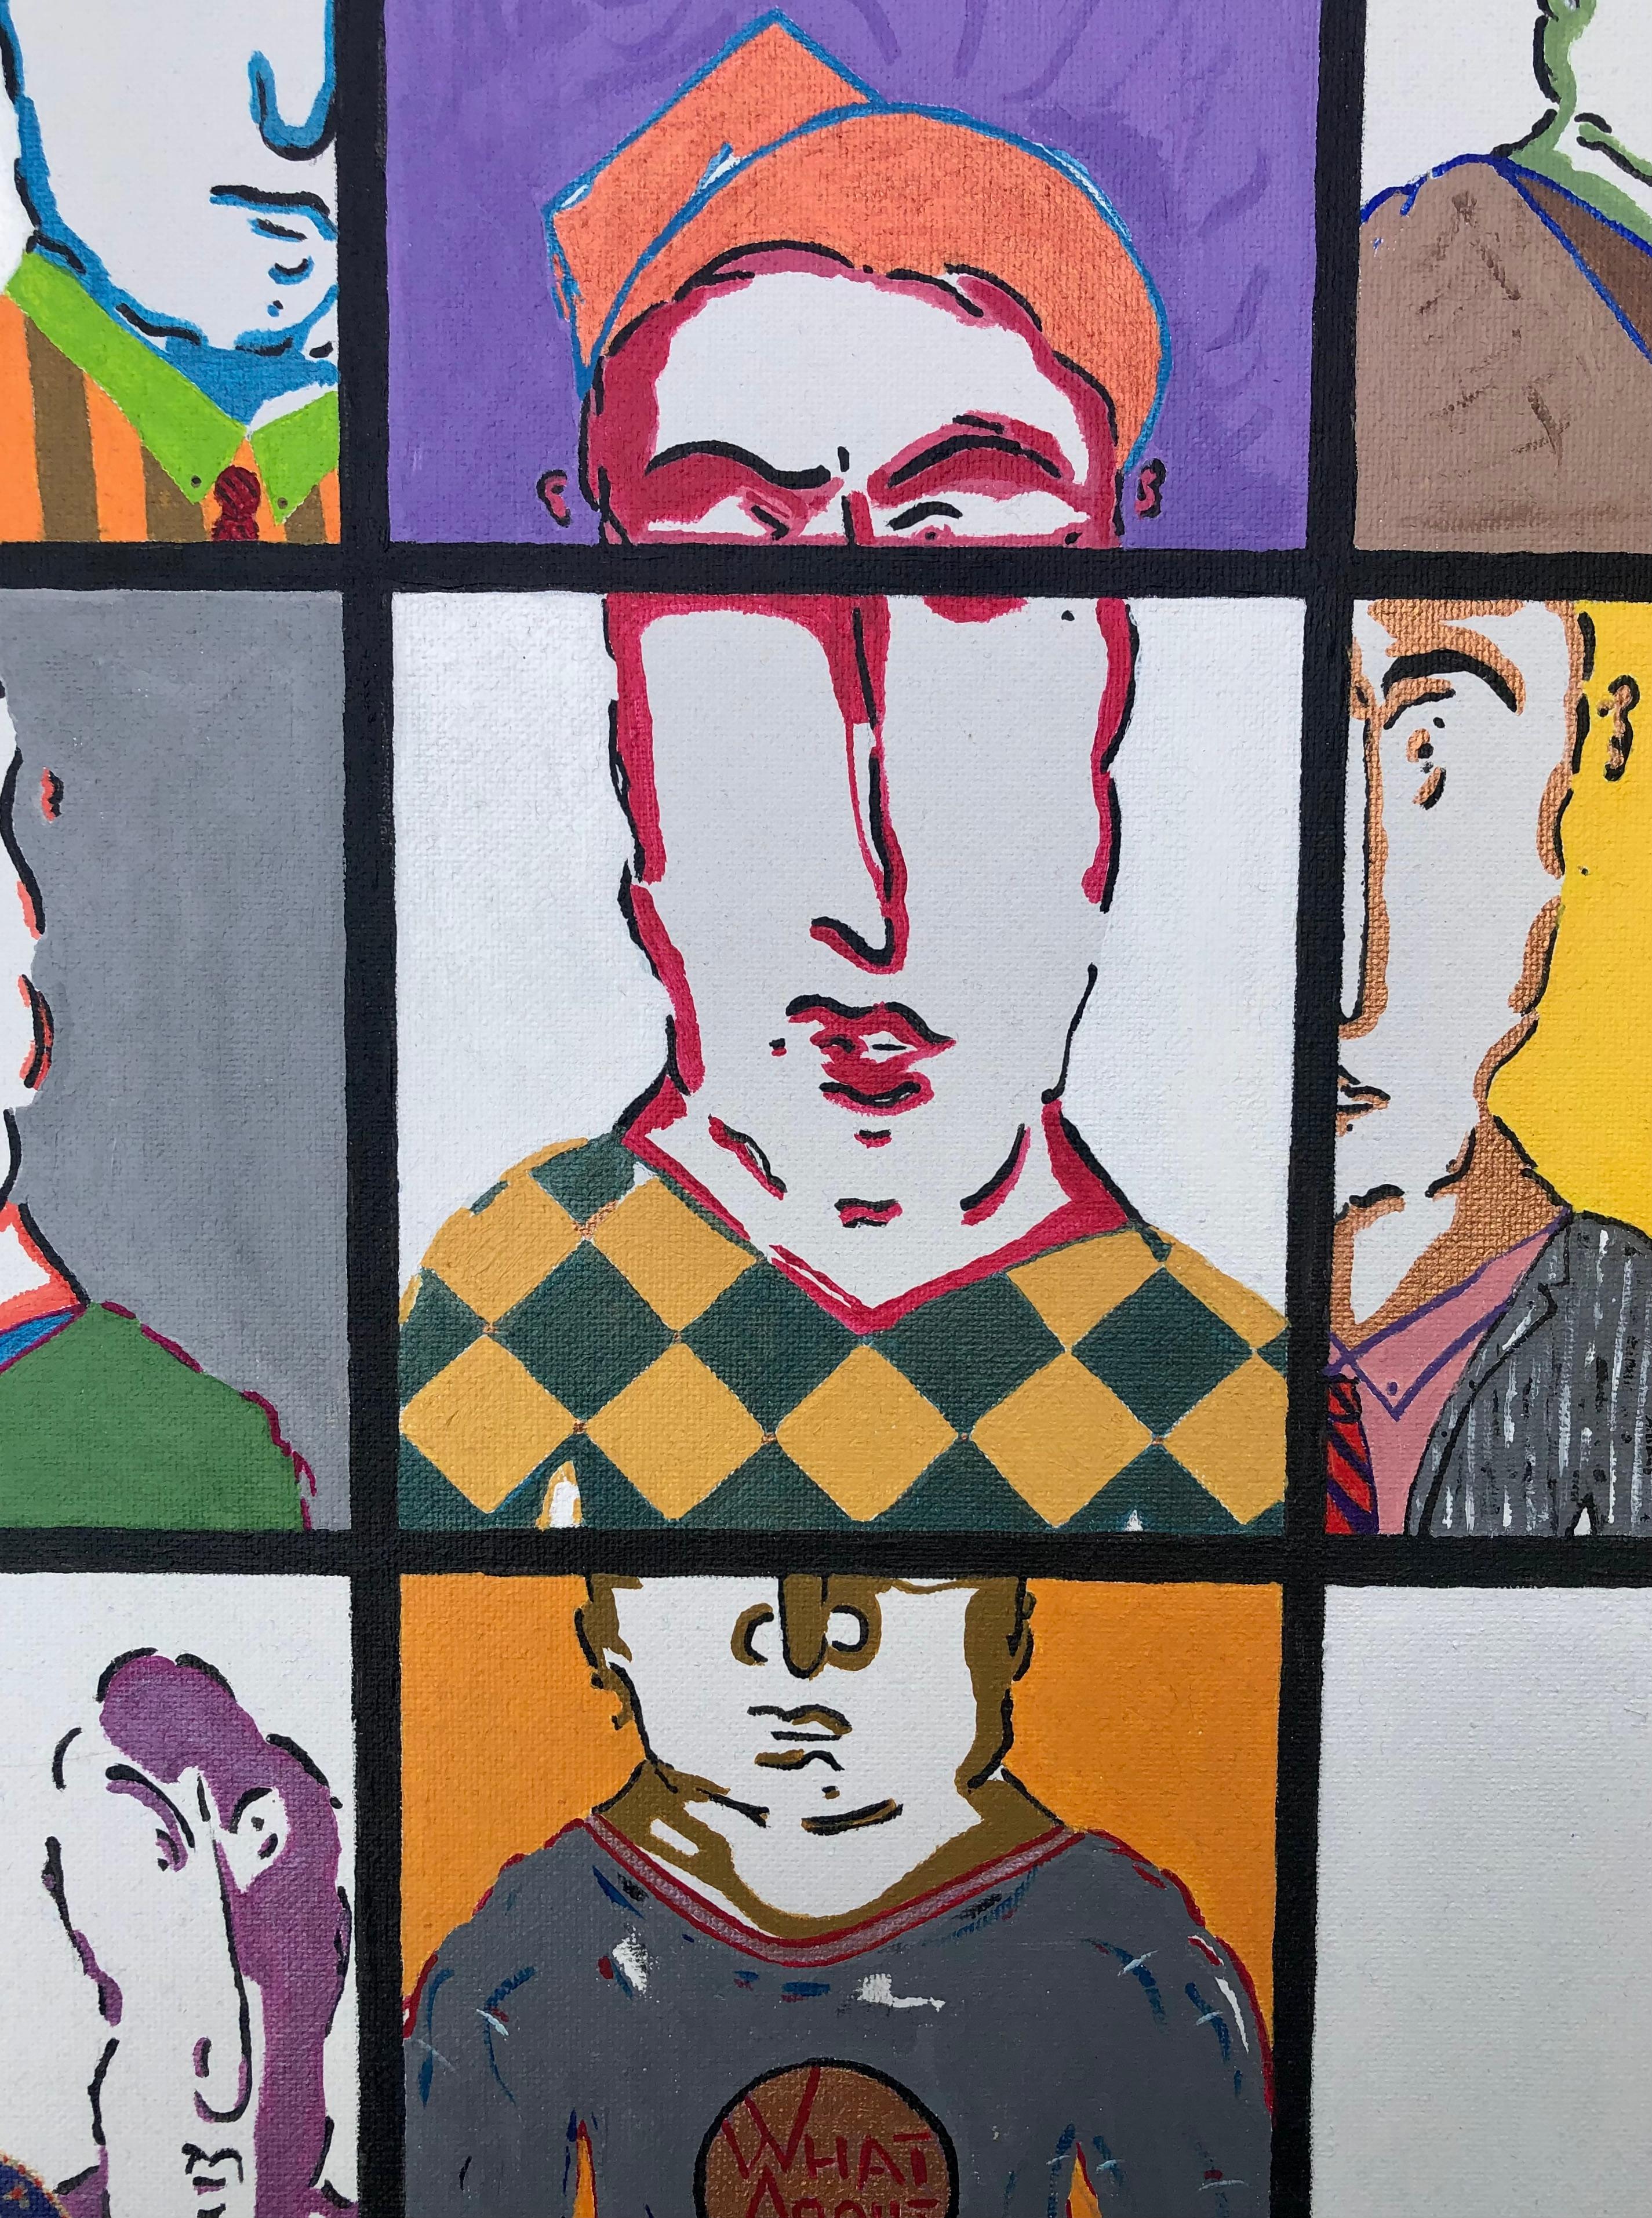 <p>Kommentare des Künstlers<br>Der Künstler John McCabe illustriert farbenfrohe grafische Gesichter, die in zwölf Mikrotafeln unterteilt sind. Er entwirft das Szenario einer explosiven politischen Landschaft innerhalb eines Gremiums von Menschen.